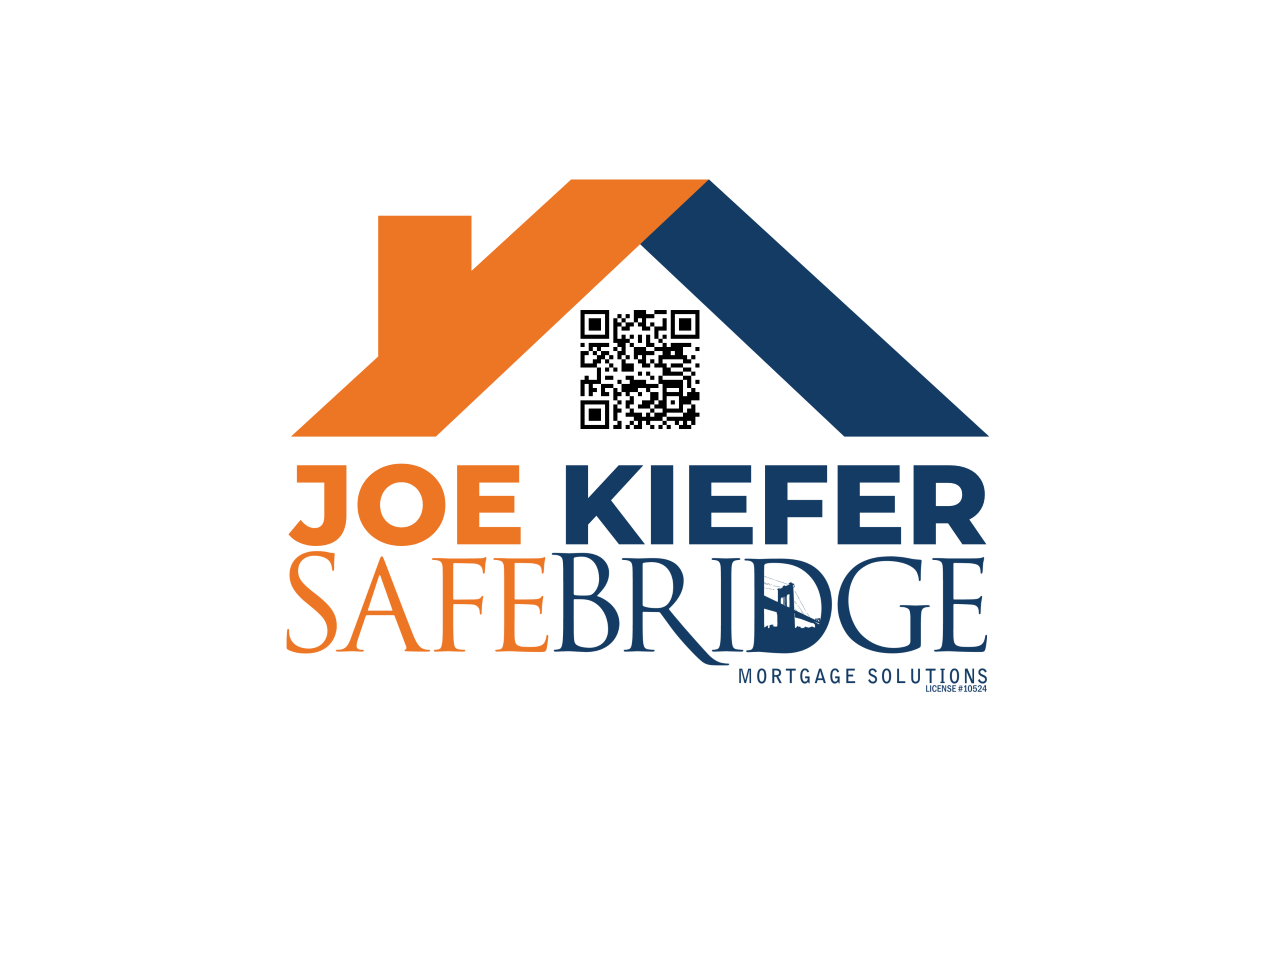 Joe Kiefer Safebridge Mortgage Solutions